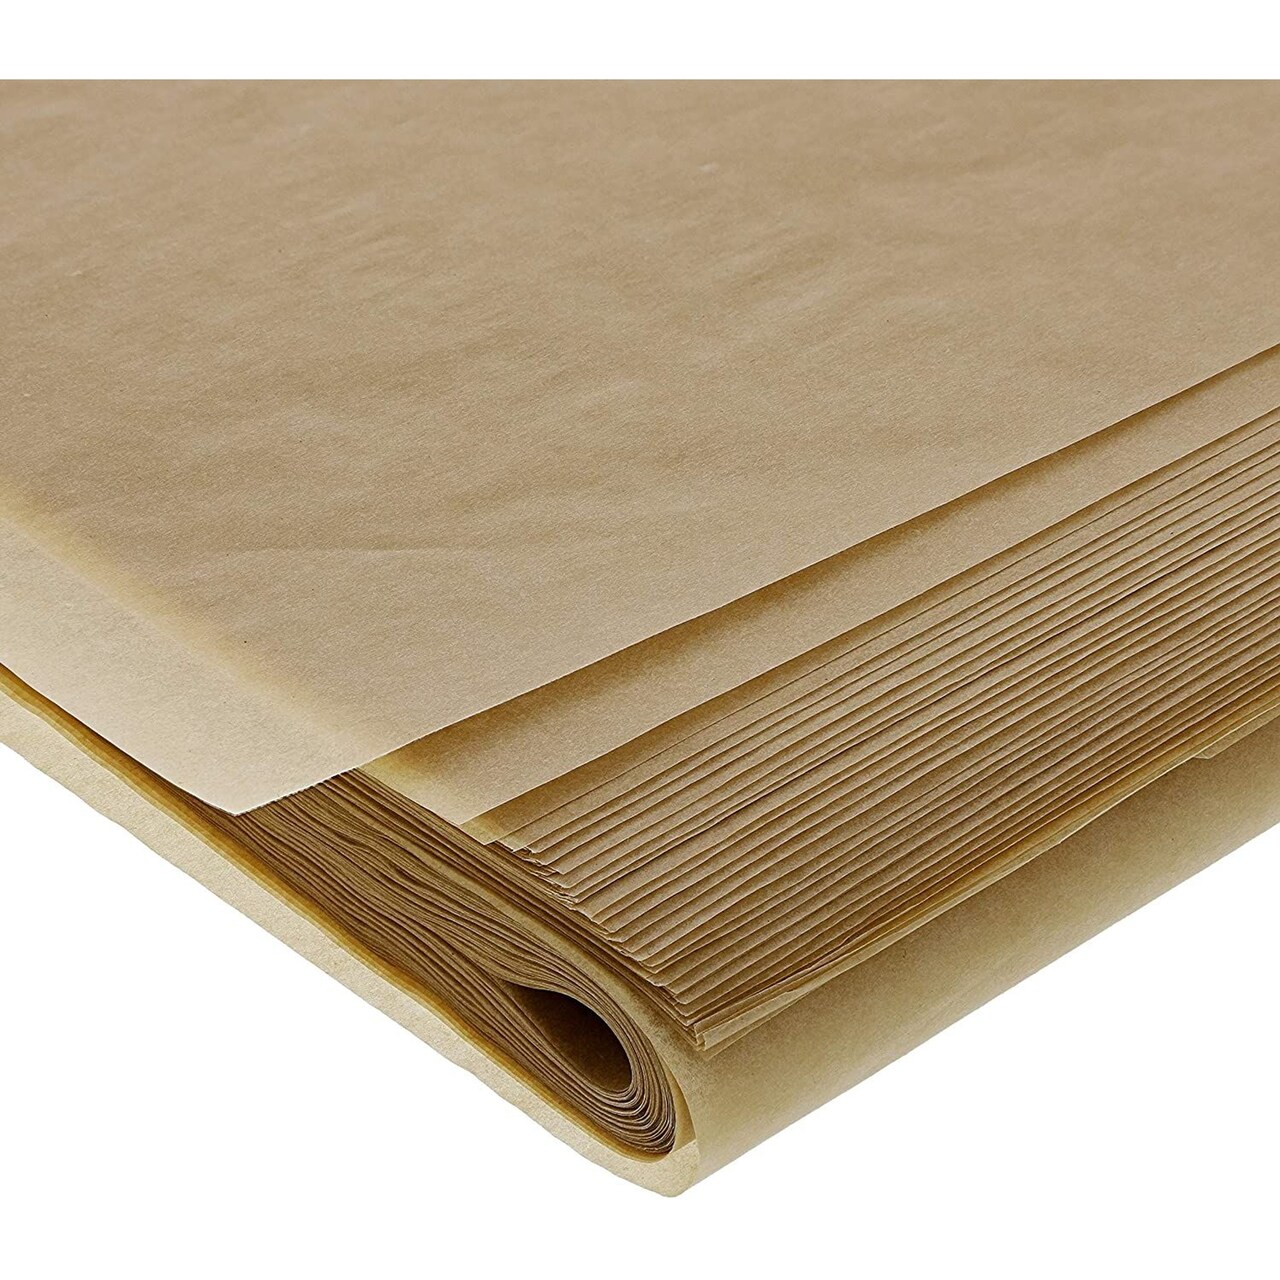 Juvale Parchment Paper 100 Pack - Full Size Precut Unbleached Parchment  sheets - 16 x 24 Inches